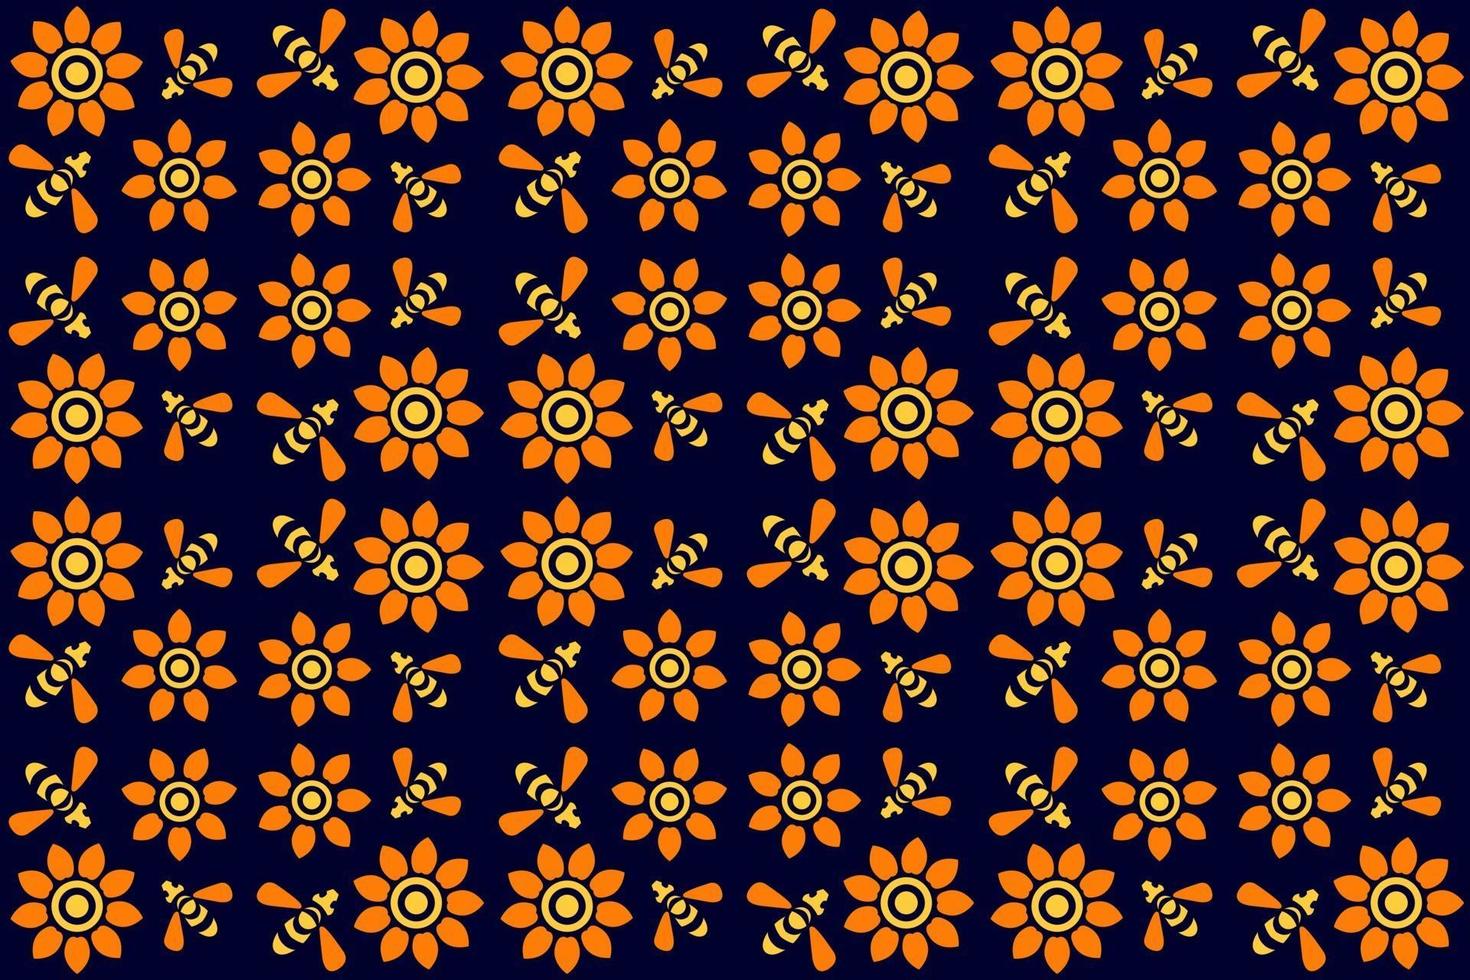 padrão de flores e abelhas, padrão floral sem costura com abelhas voando, flores de laranja amarelas sobre fundo azul, padrão têxtil, vintage, estilo retro, vetor